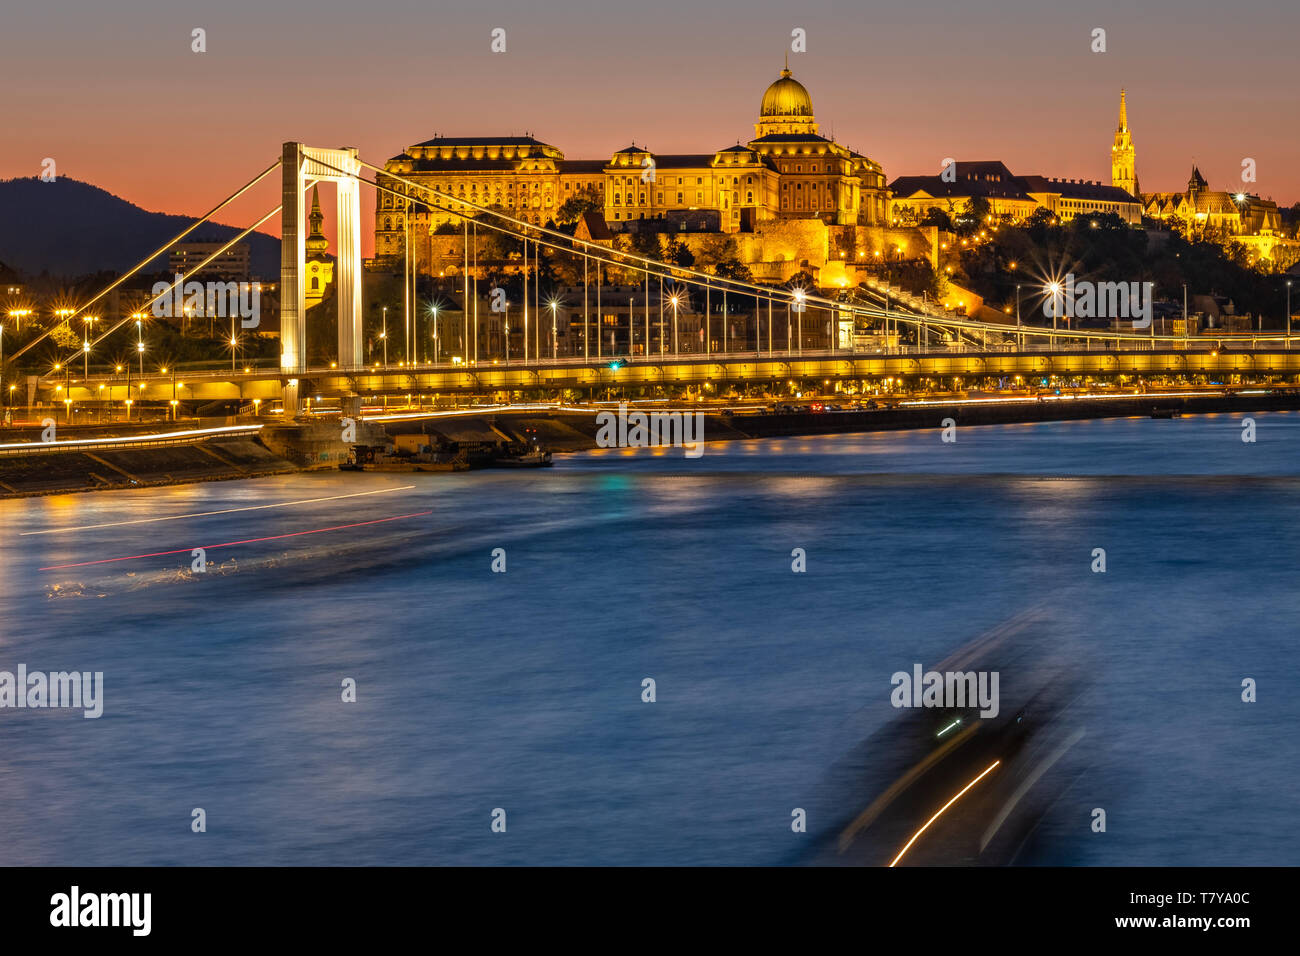 Danube, vue de pont de la liberté "zabadság híd' vers le château de Buda et le pont Elizabeth 'Erzsébet híd' la nuit, Budapest / Hongrie. Banque D'Images